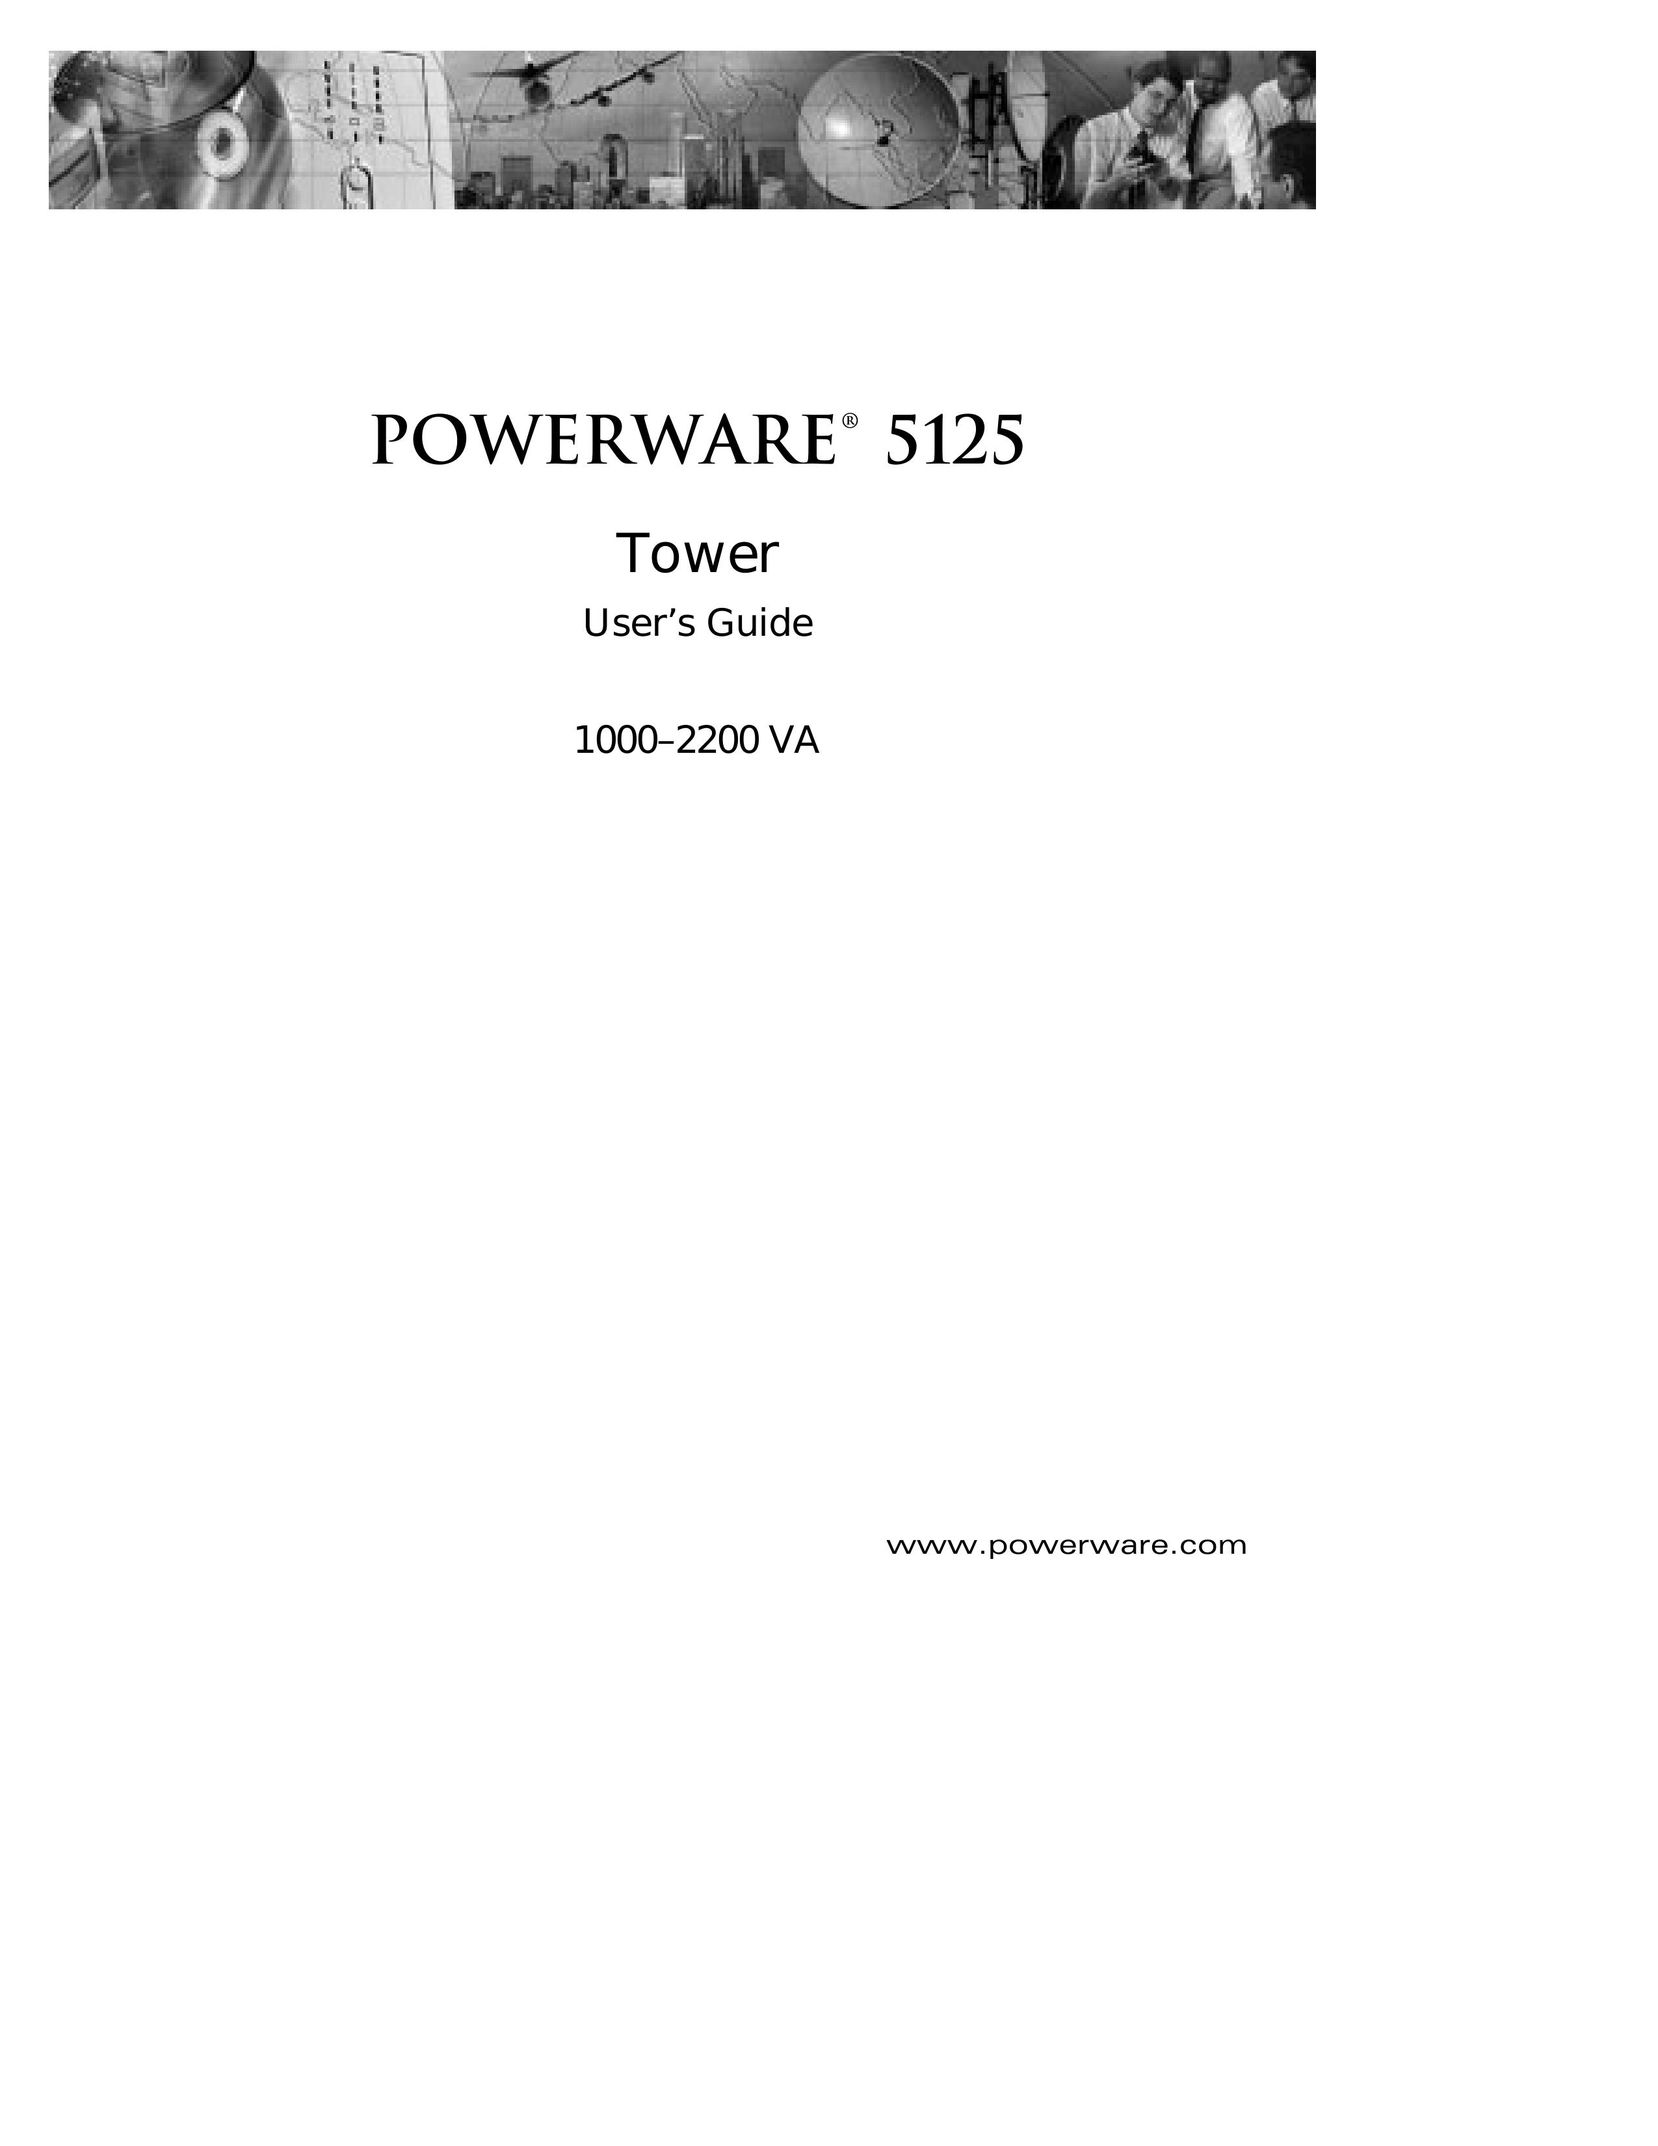 Powerware 5125 Network Card User Manual